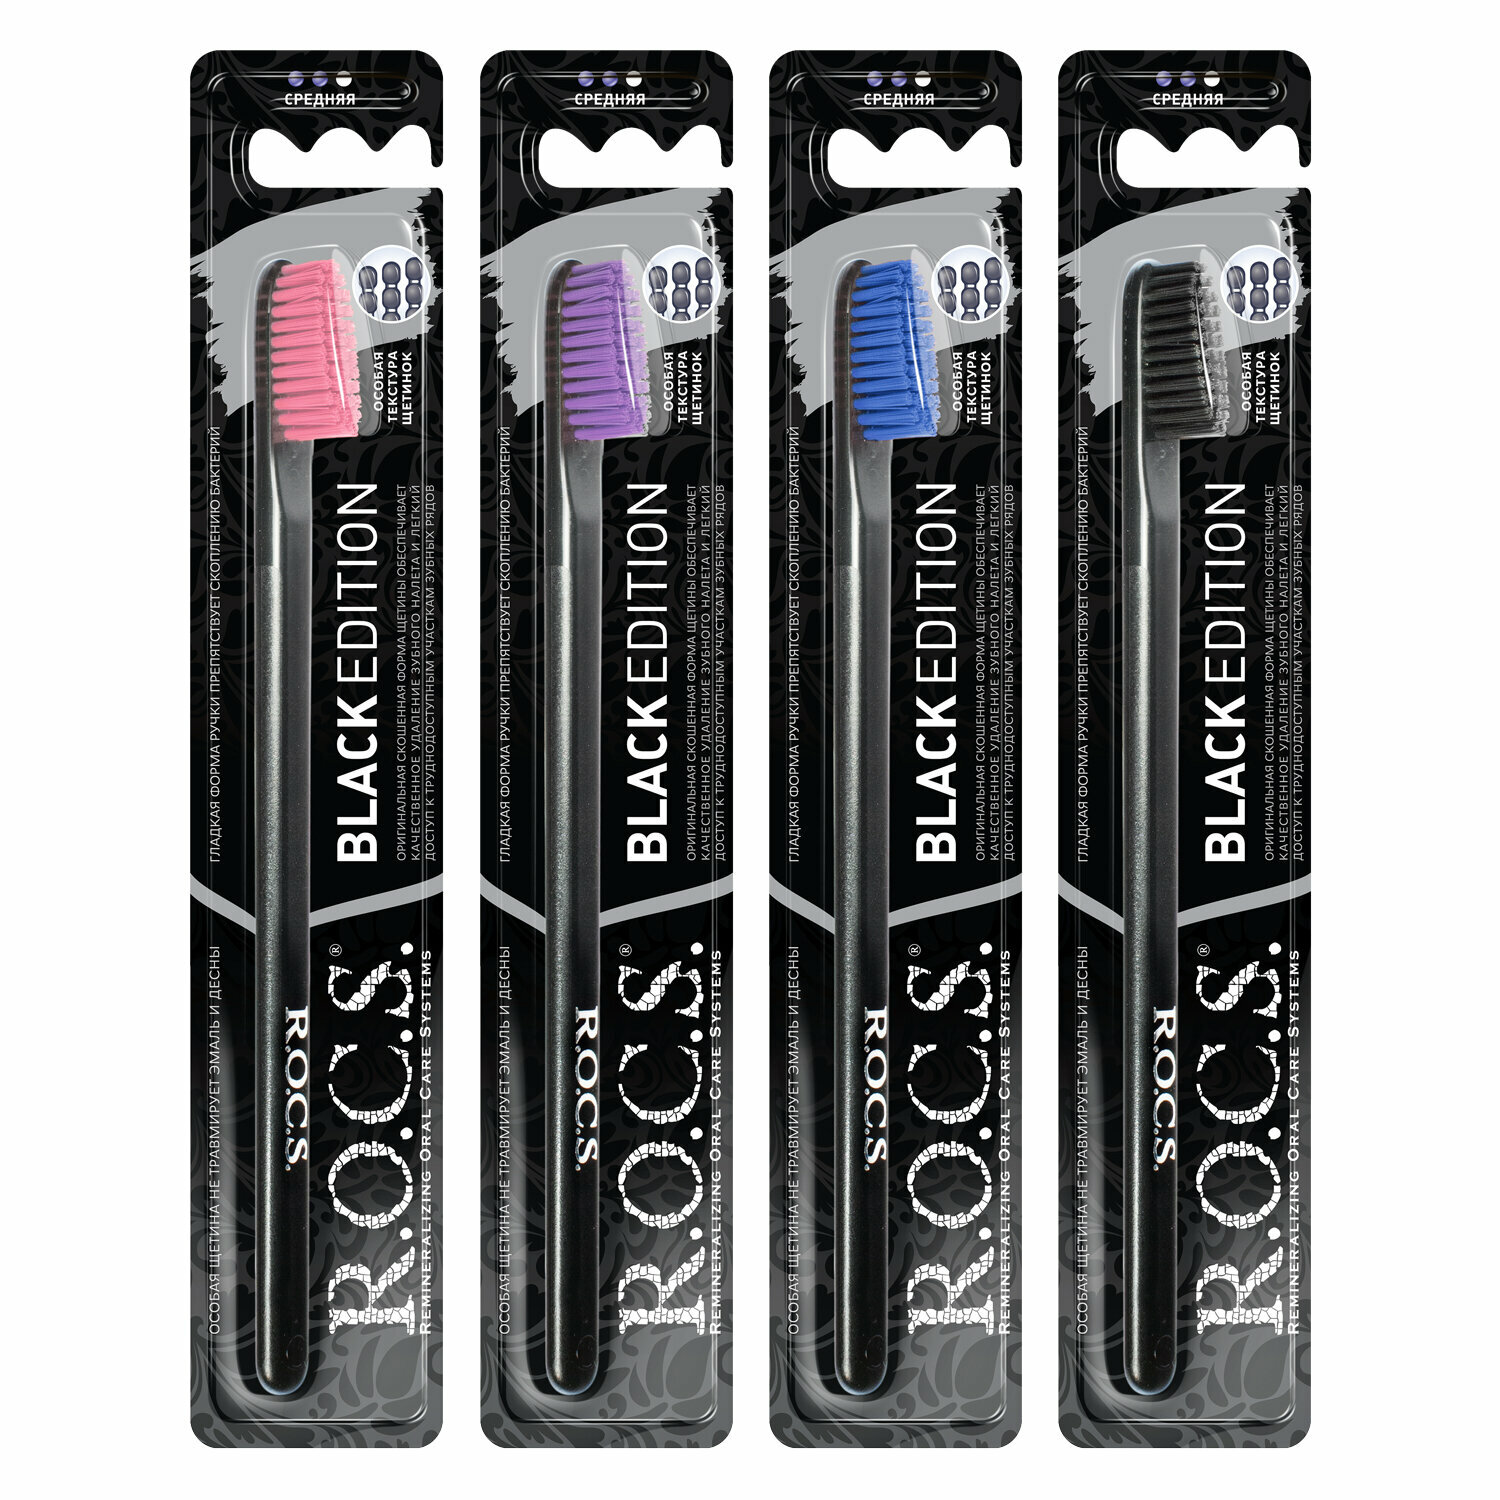 Зубная щетка R.O.C.S. Black Edition Classic средней жесткости цвета в ассортименте 1 шт